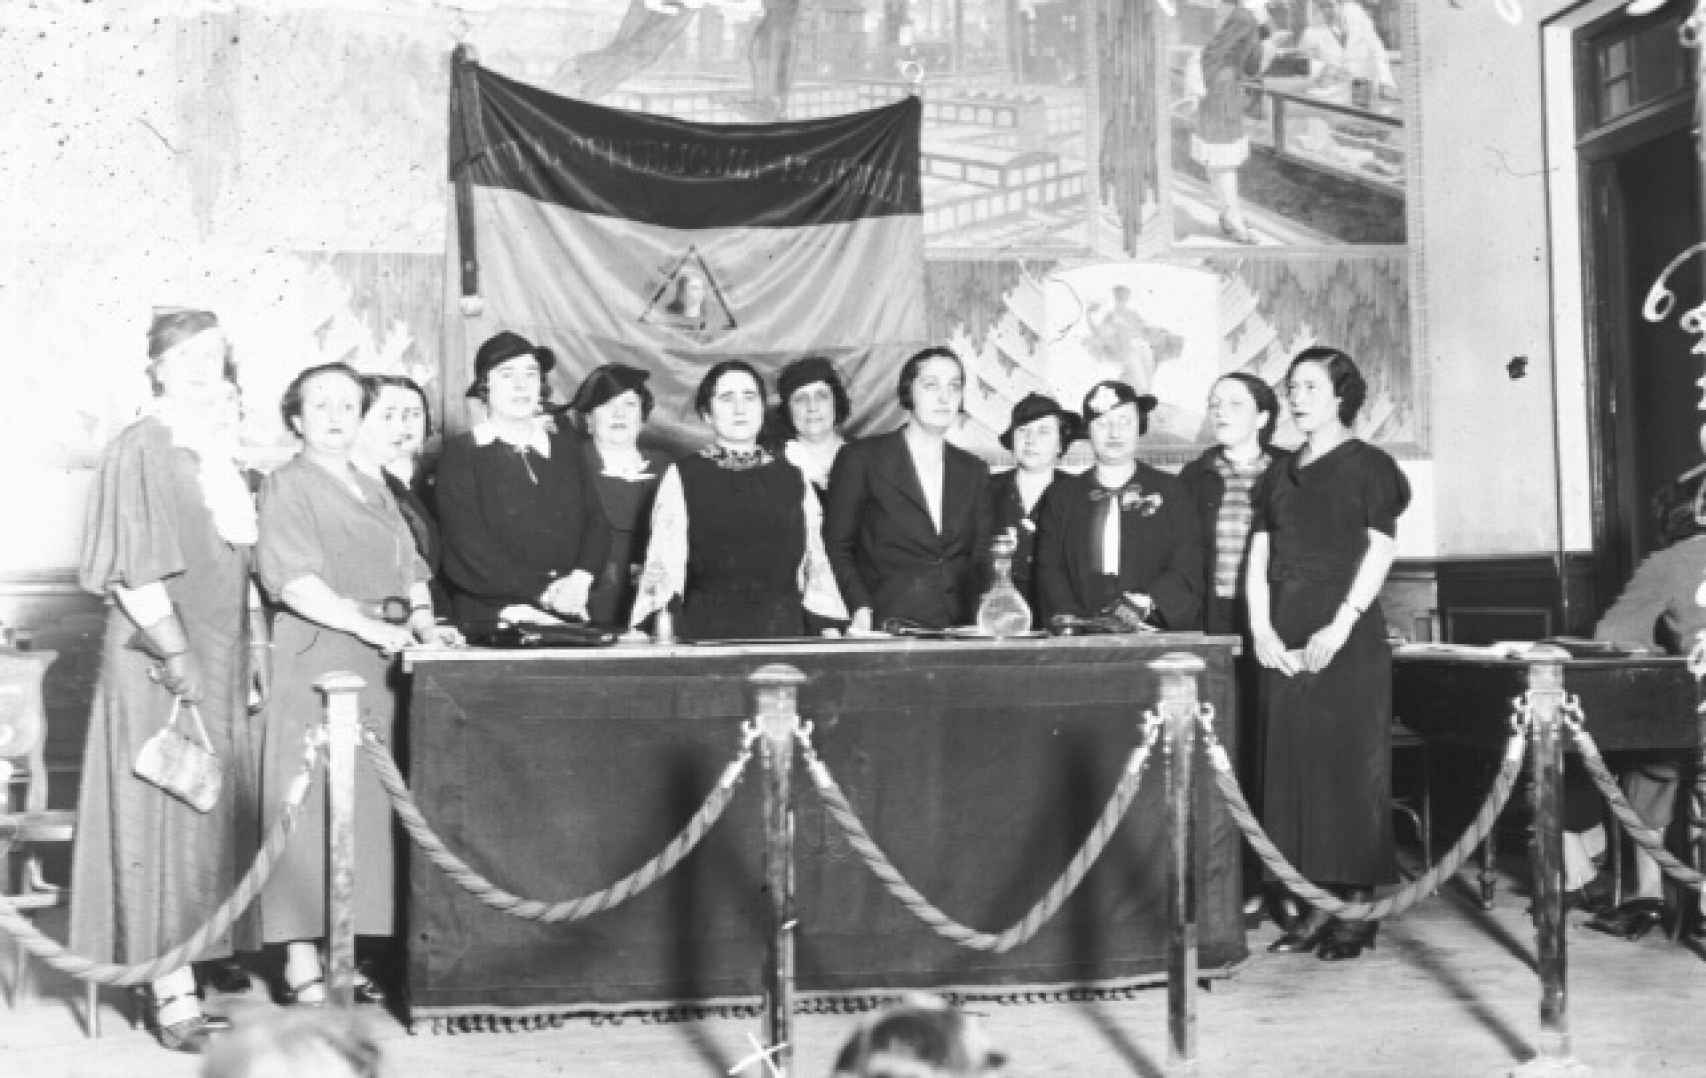 Clara Campoamor, en el centro, en un mitin en los años 30 reclamando los derechos de la mujer.